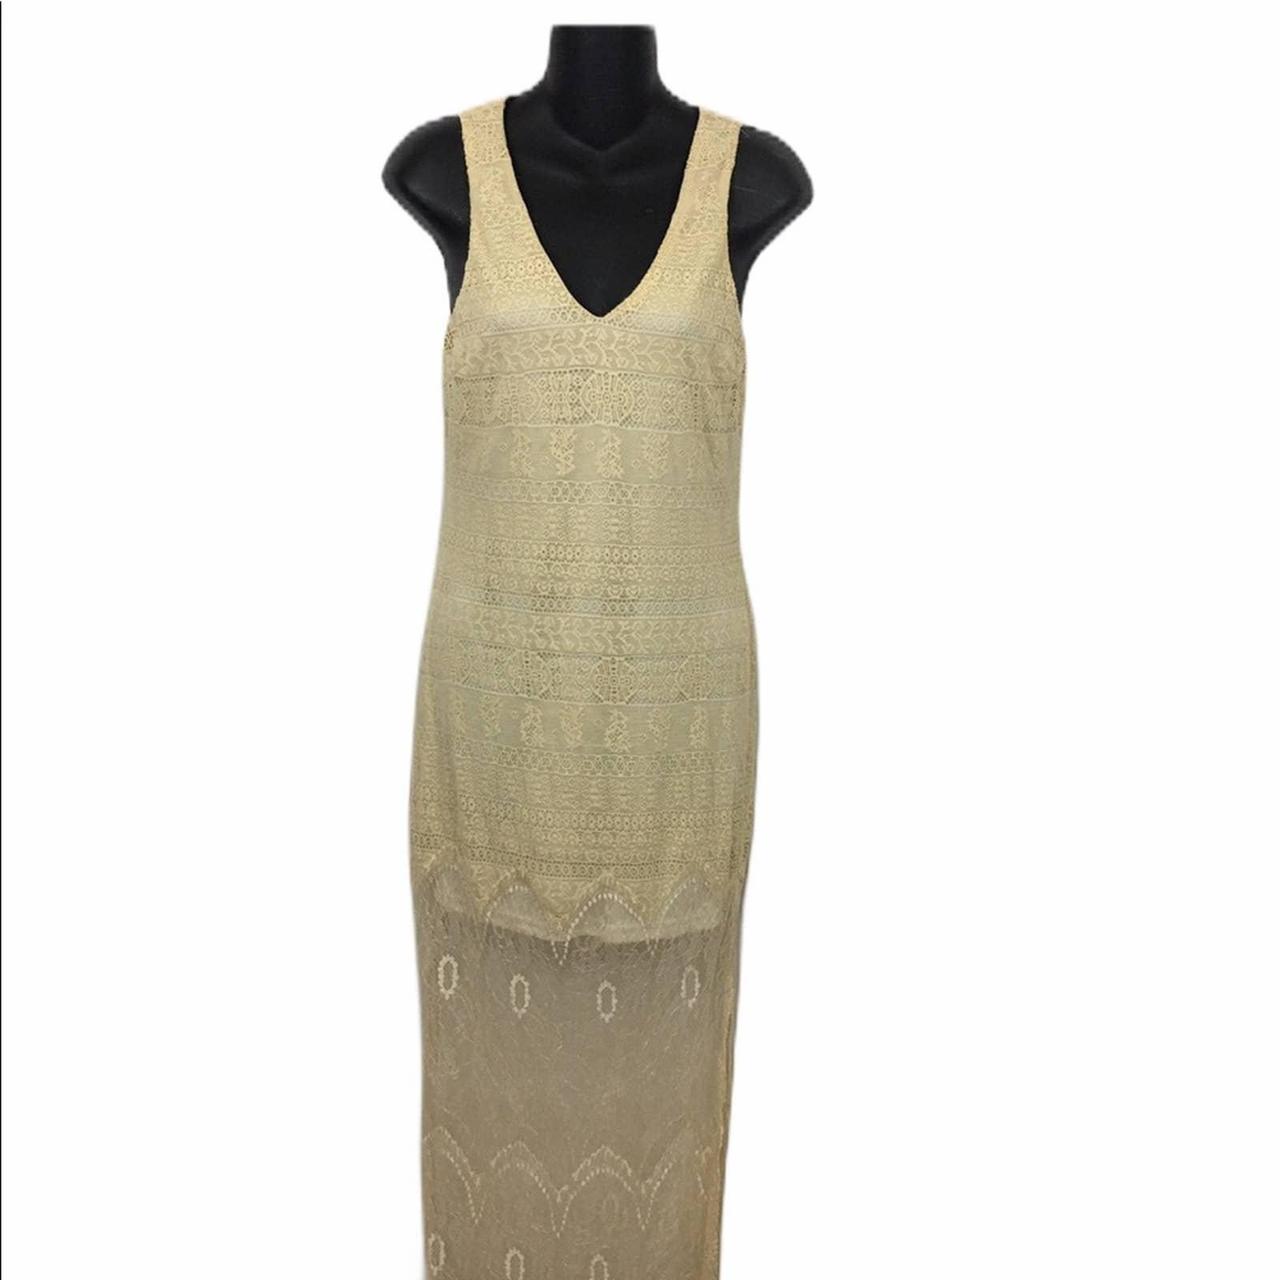 Product Image 4 - Lush Lace Sleeveless Maxie Dress